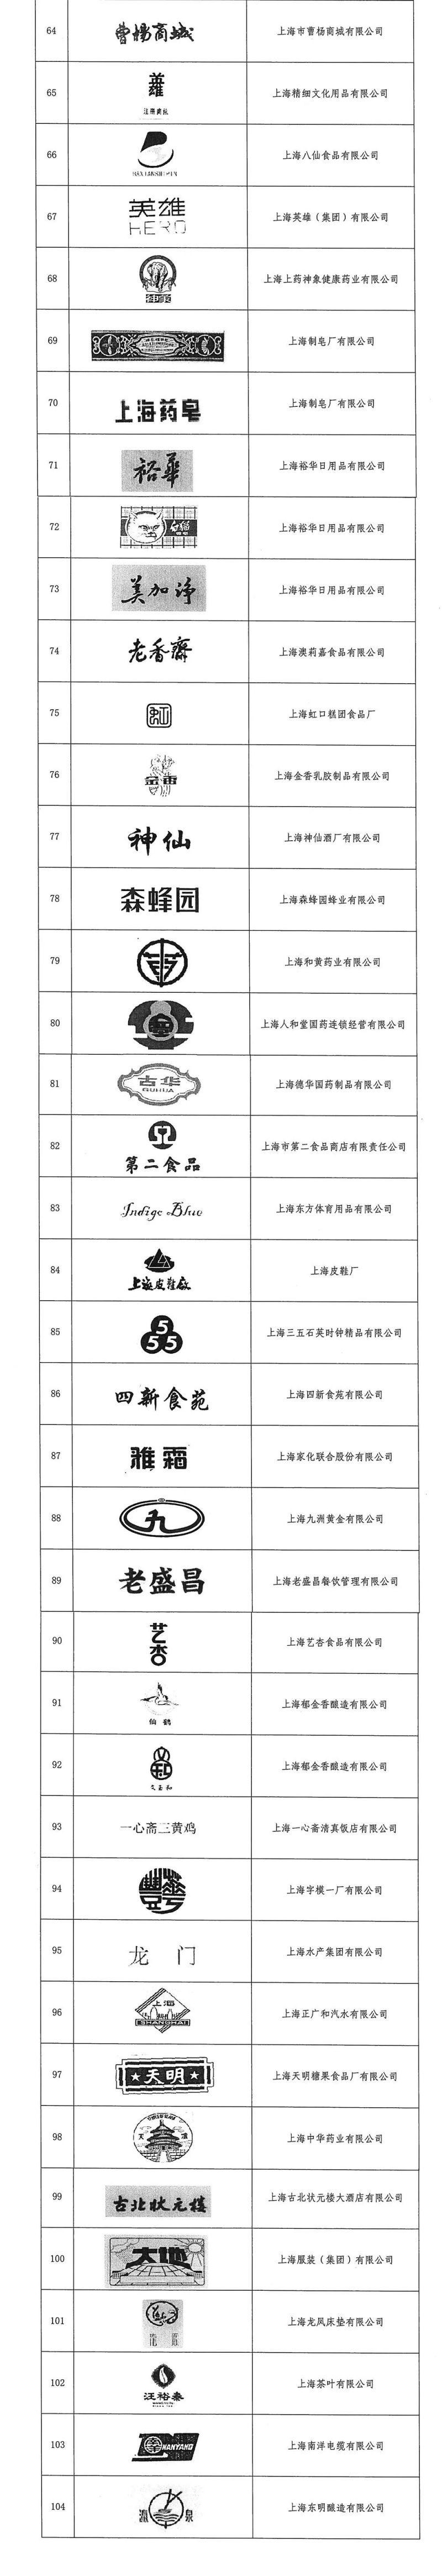 上海市老字号名录一览表(共计104个)